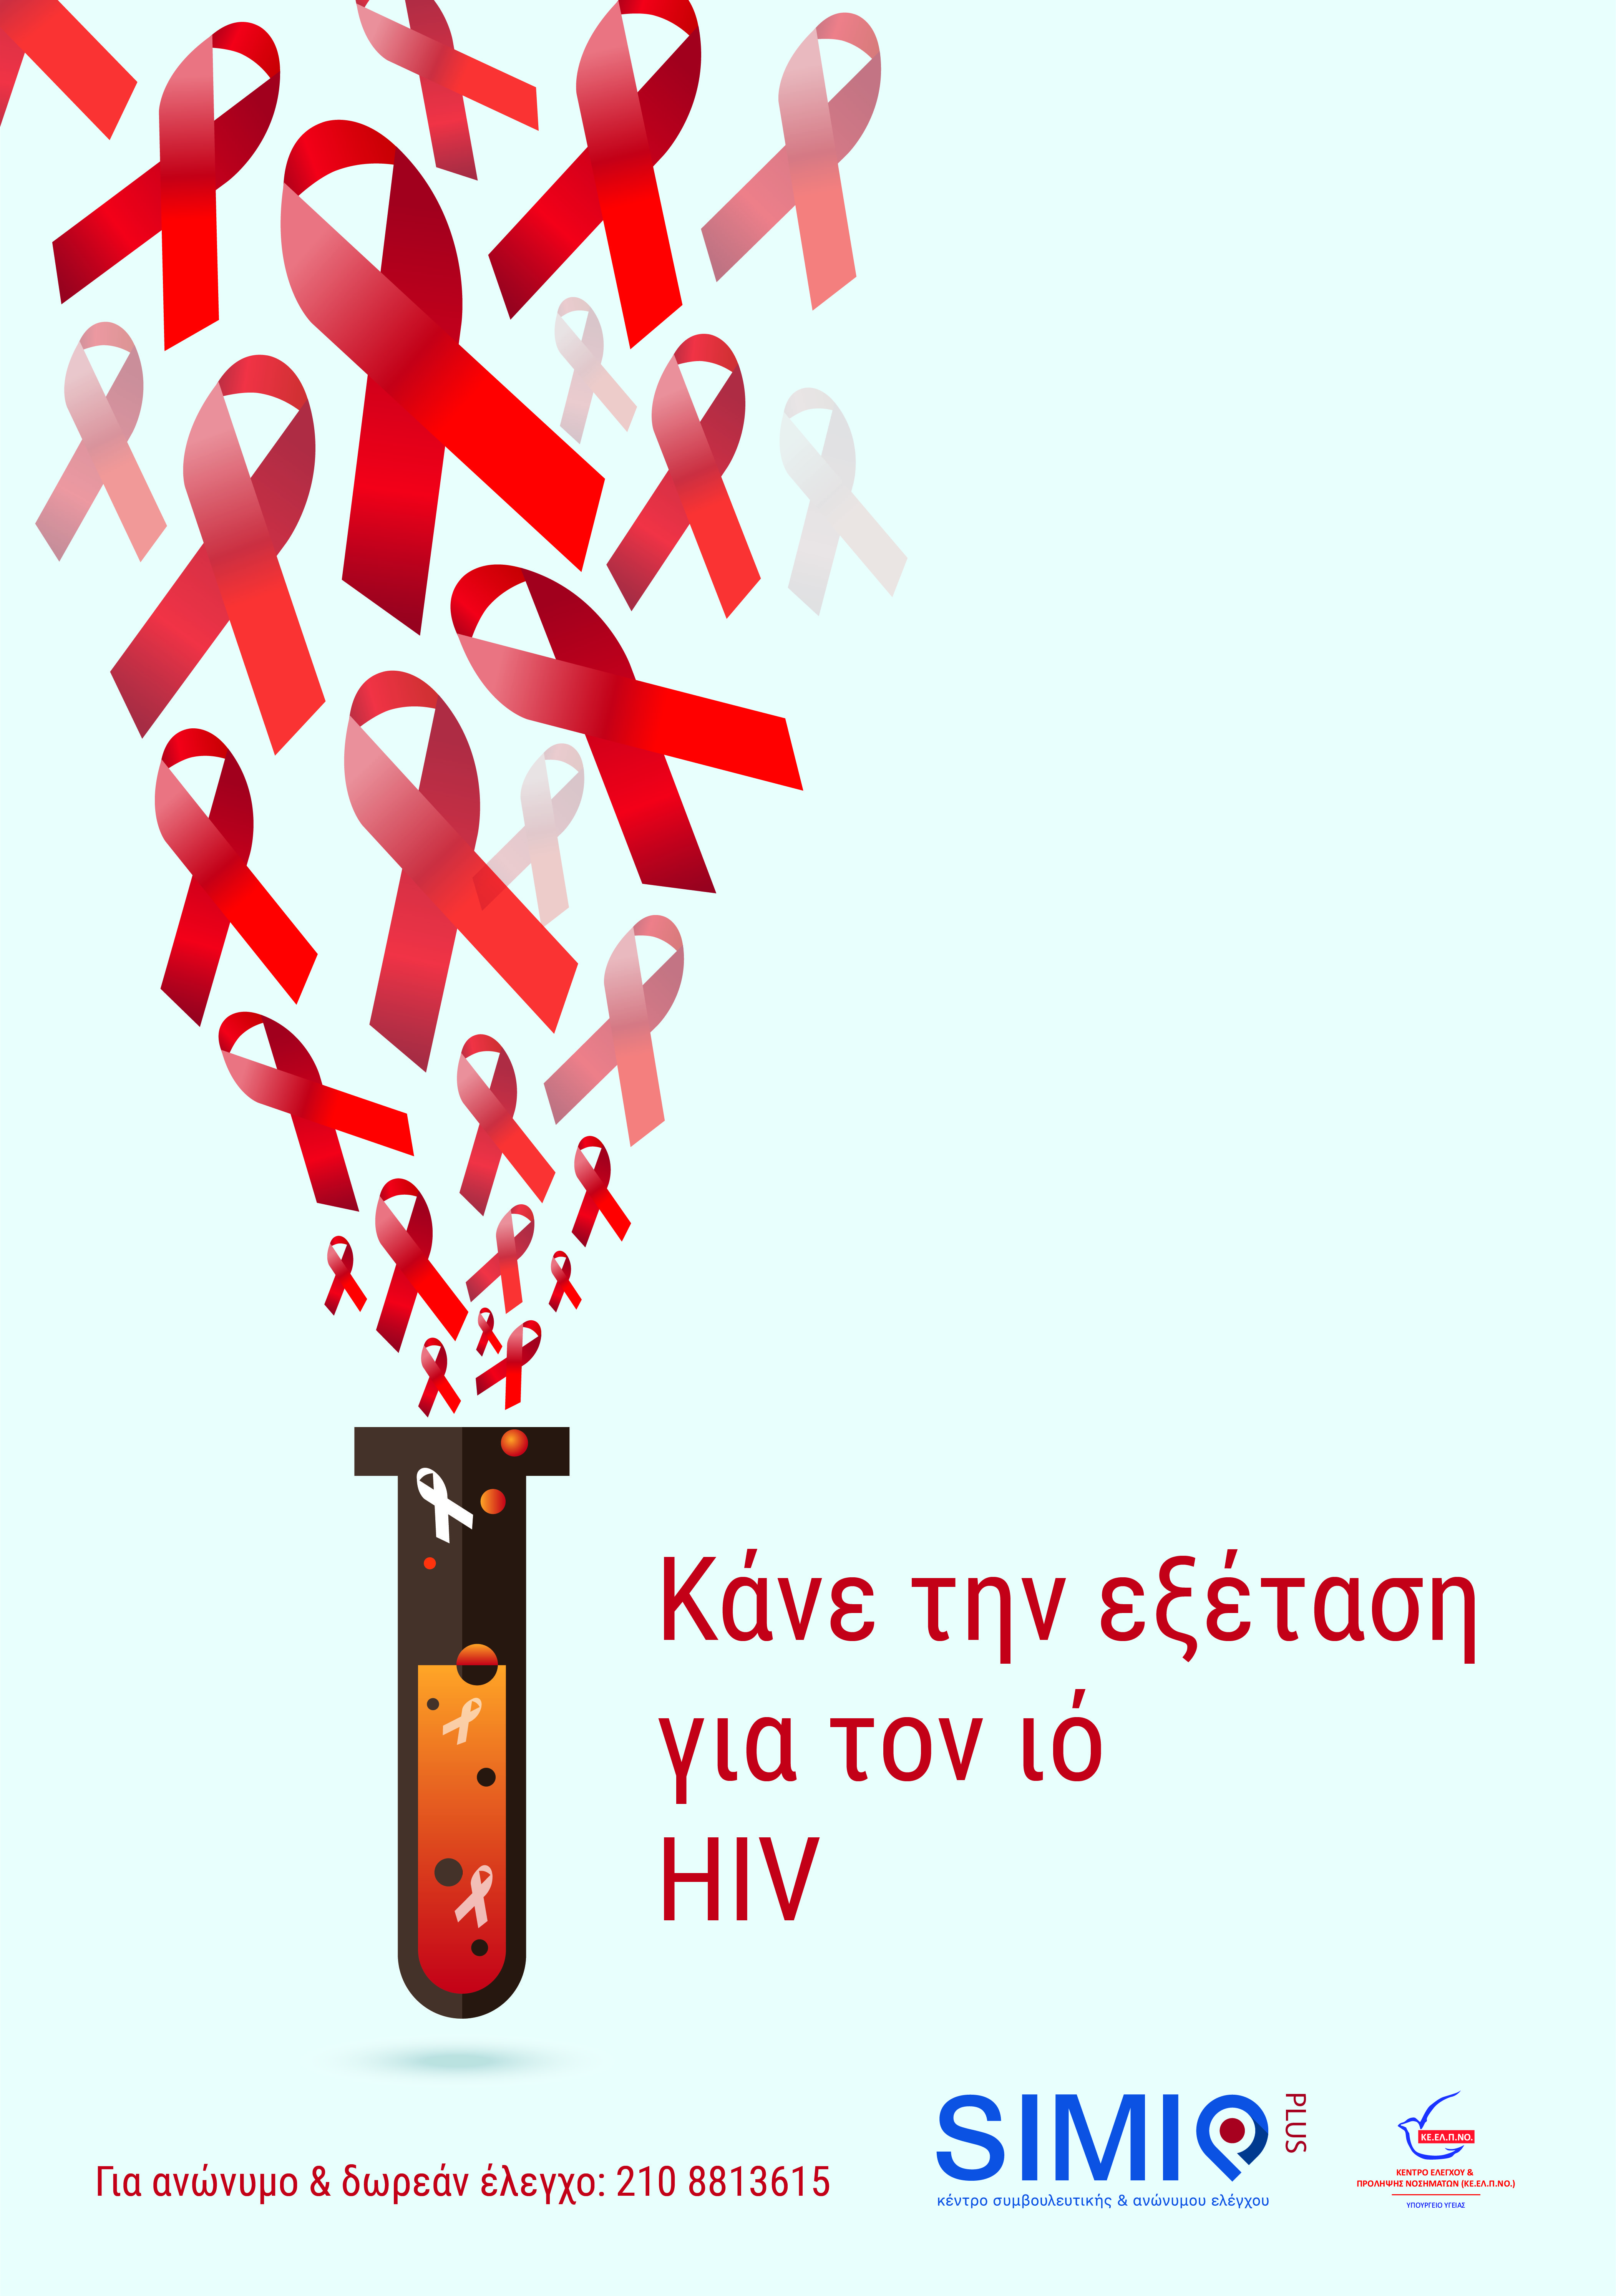 Στοιχεία για το HIV/AIDS με αφορμή την Παγκόσμια ημέρα κατά της λοίμωξης